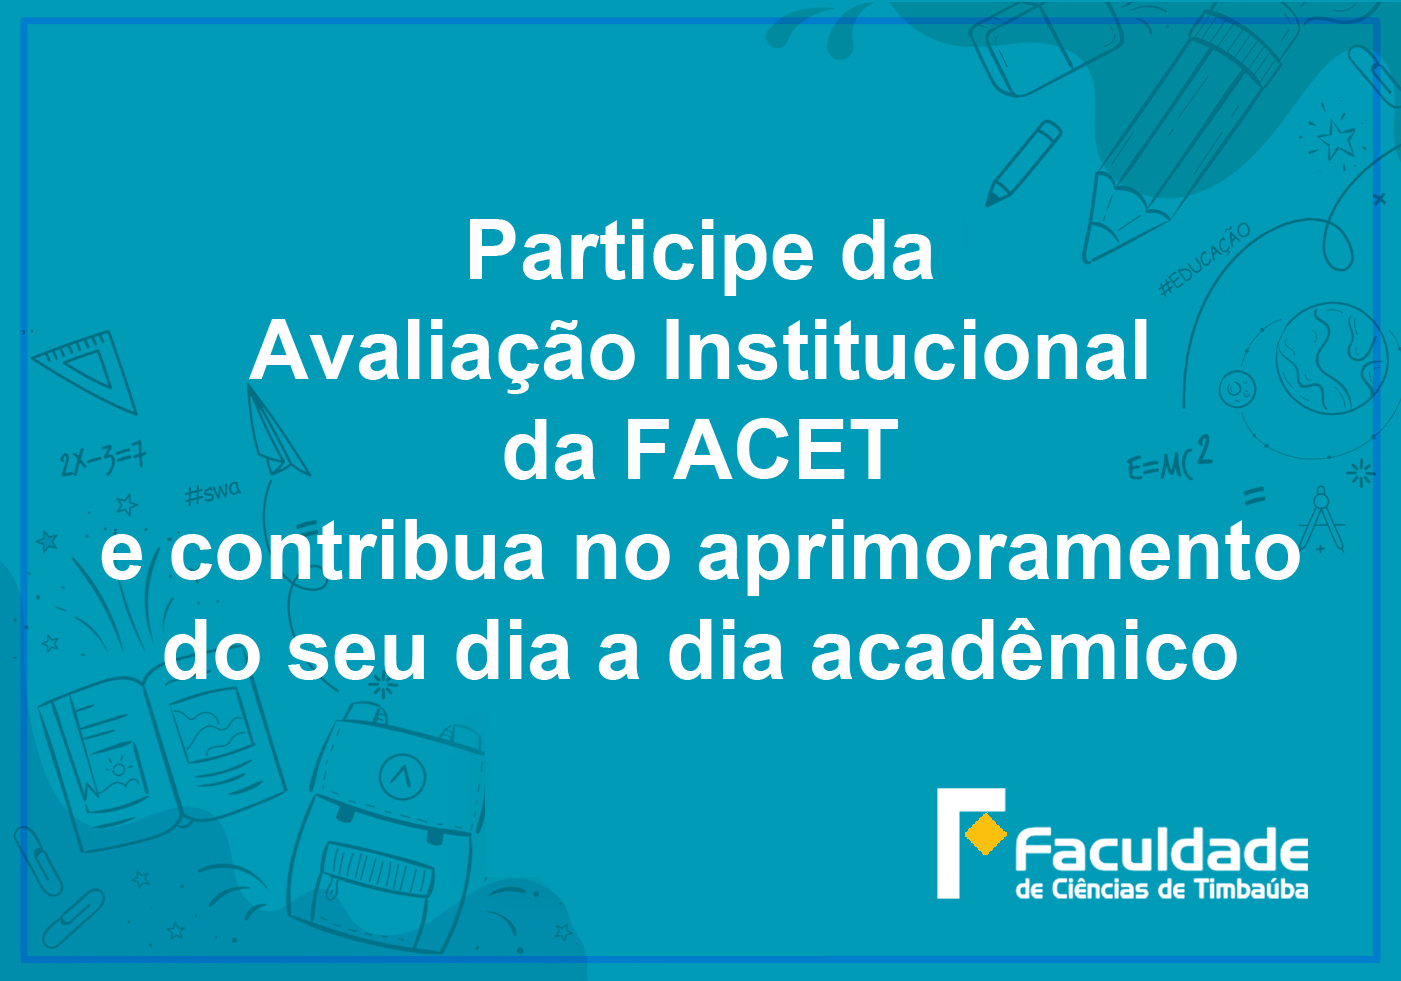 Participe da avaliação institucional da FACET